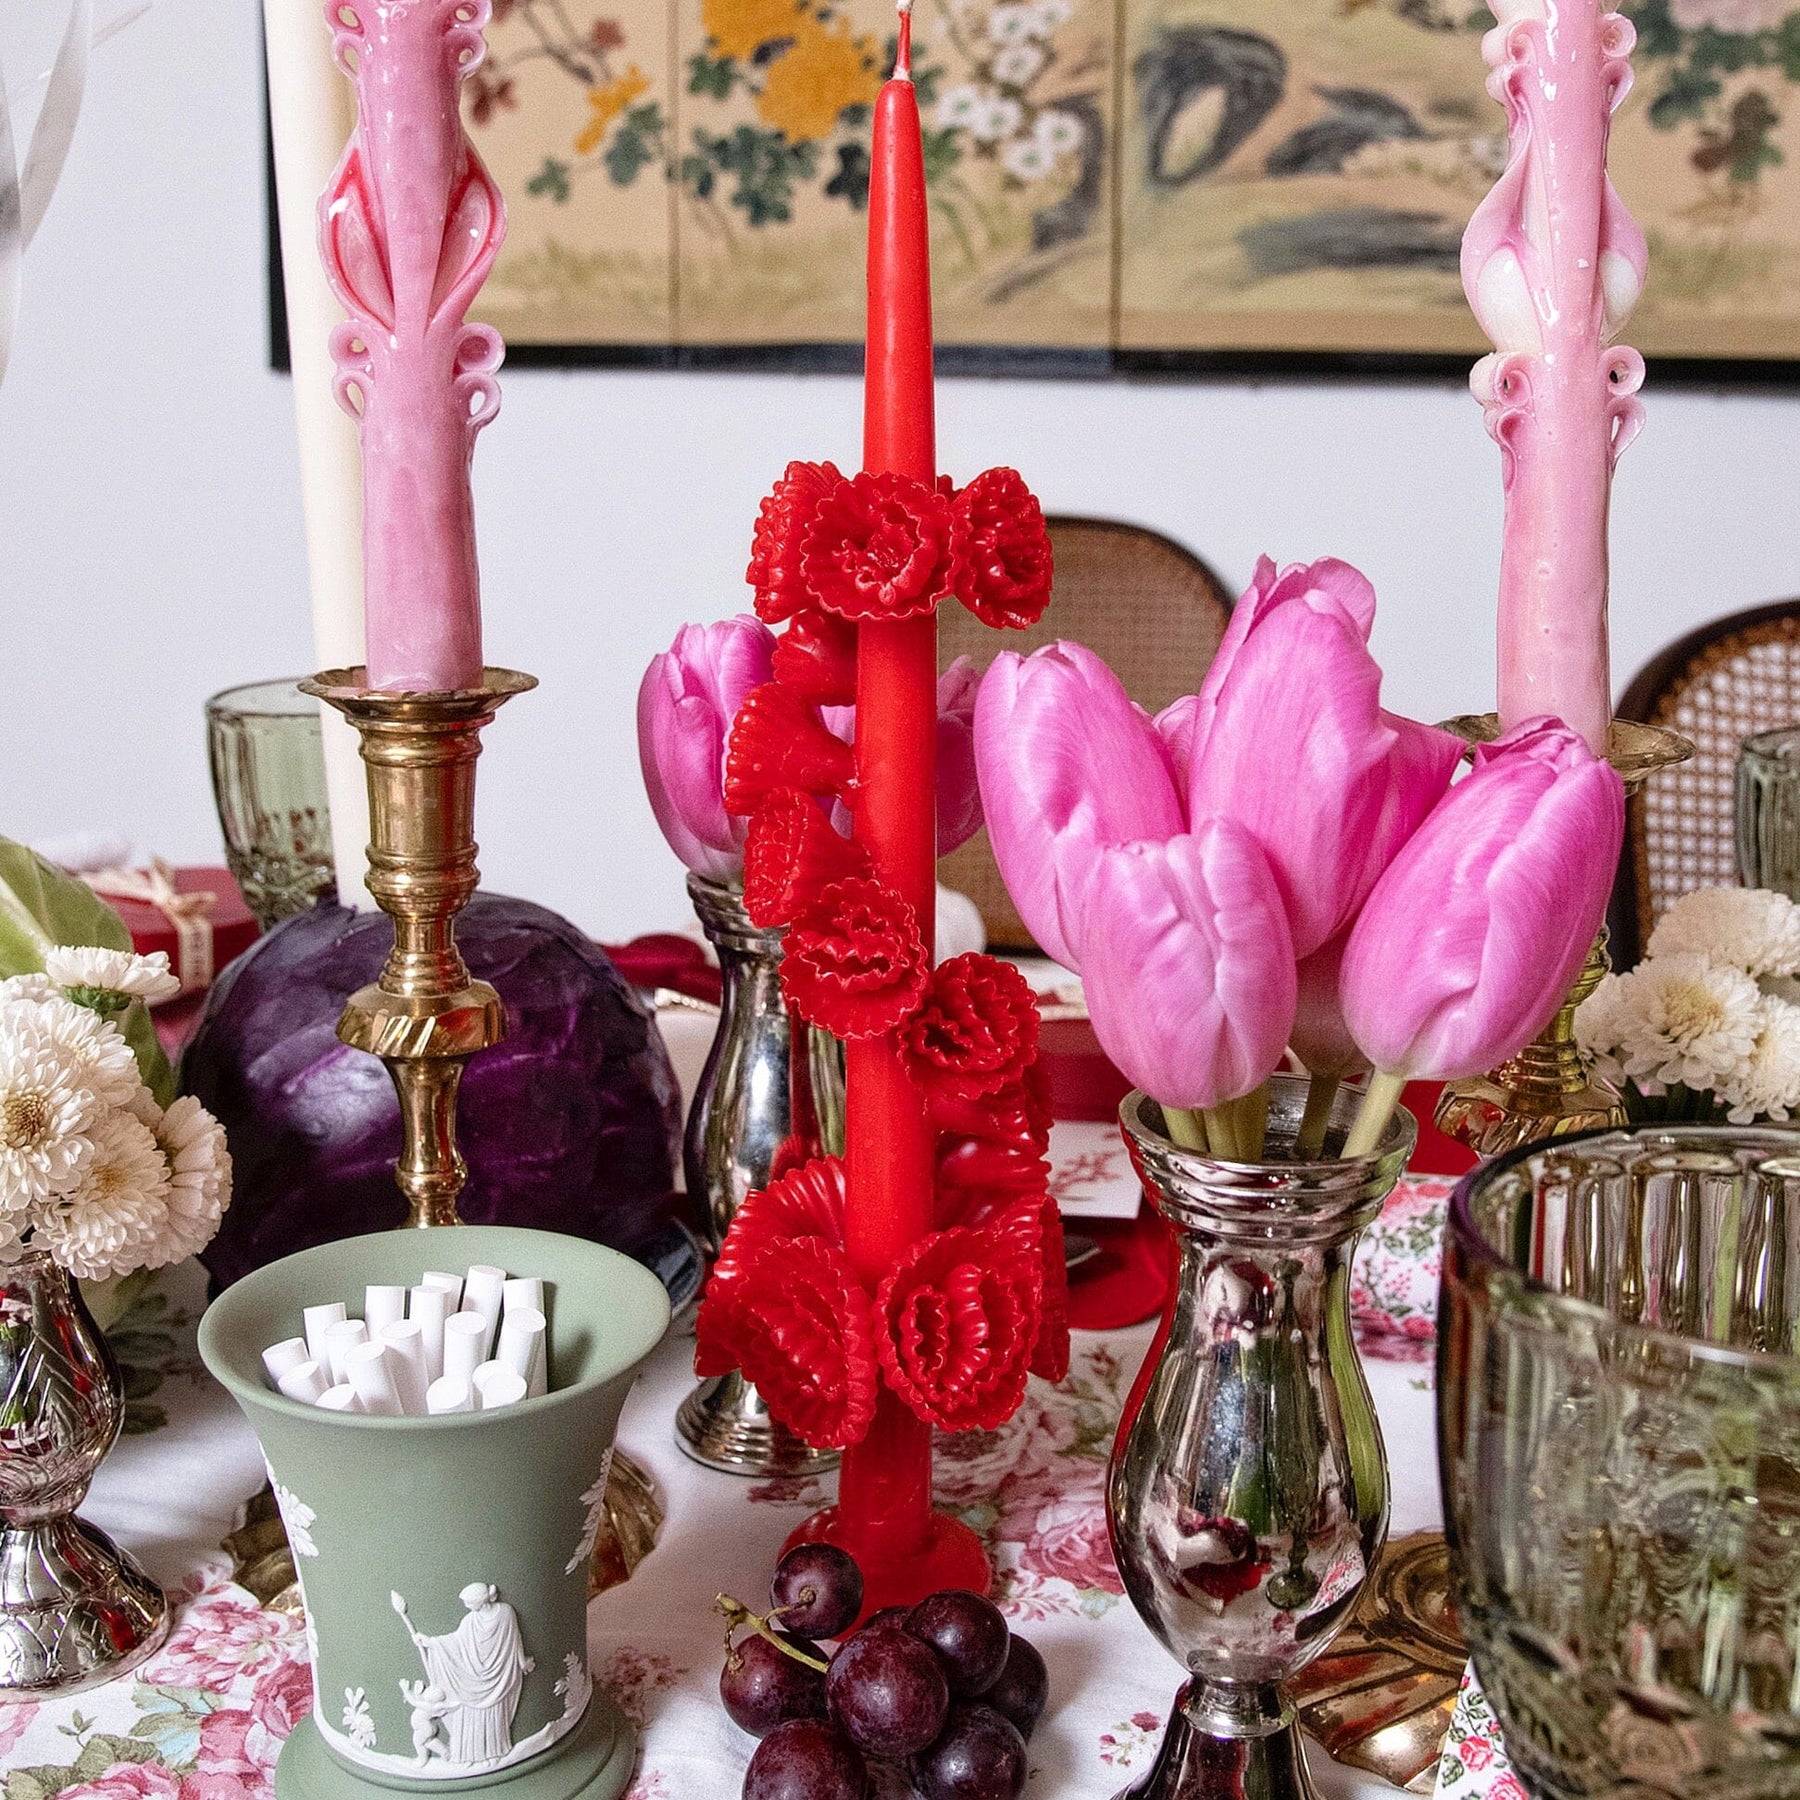 Medium Multicolored Flower Candle – Chefanie